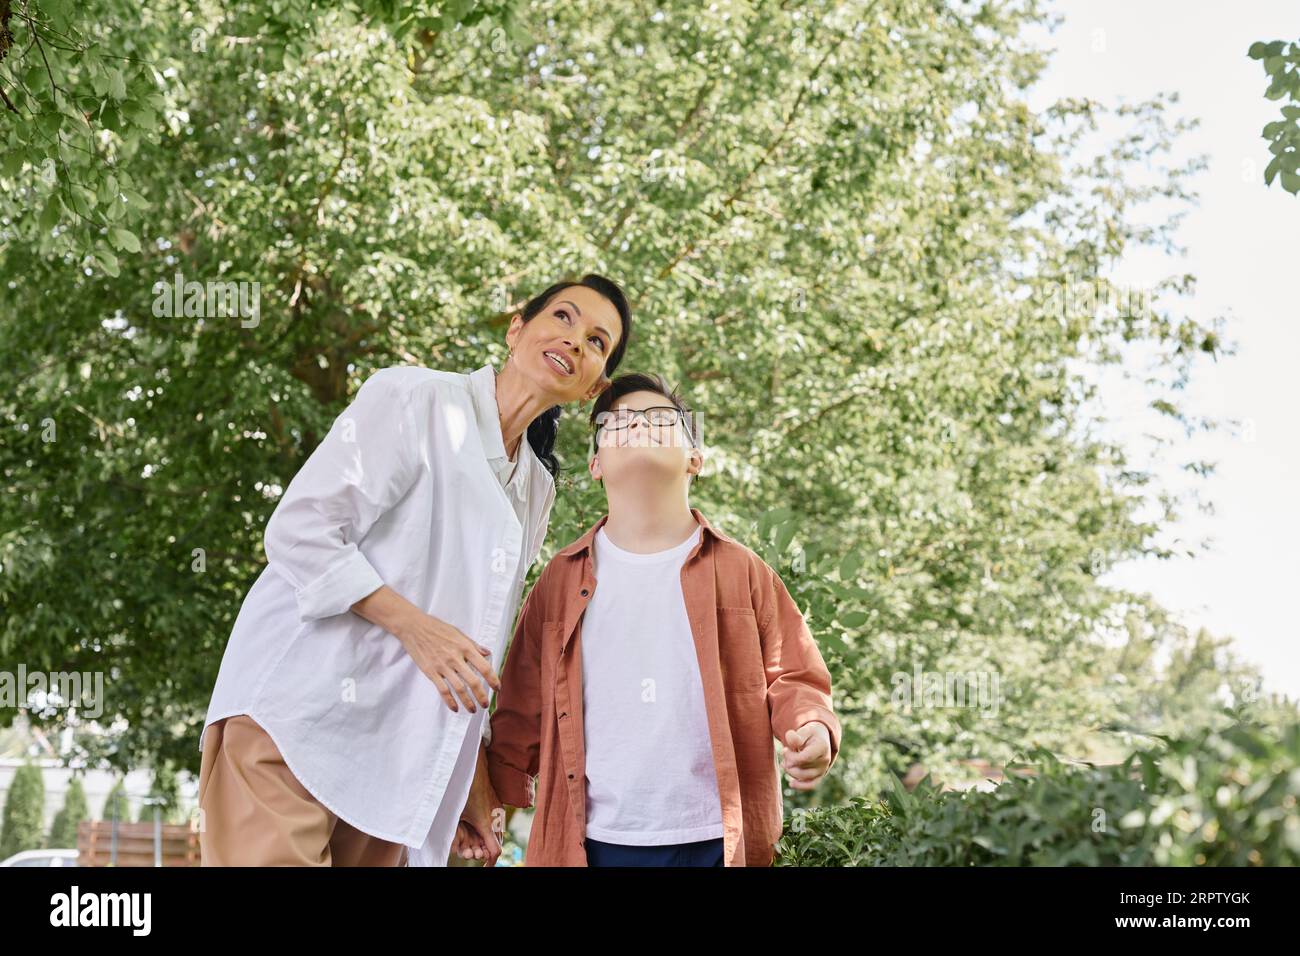 Lächelnde Frau mittleren Alters und Junge mit Down-Syndrom, die im Park wegschauen, glückliche Momente Stockfoto